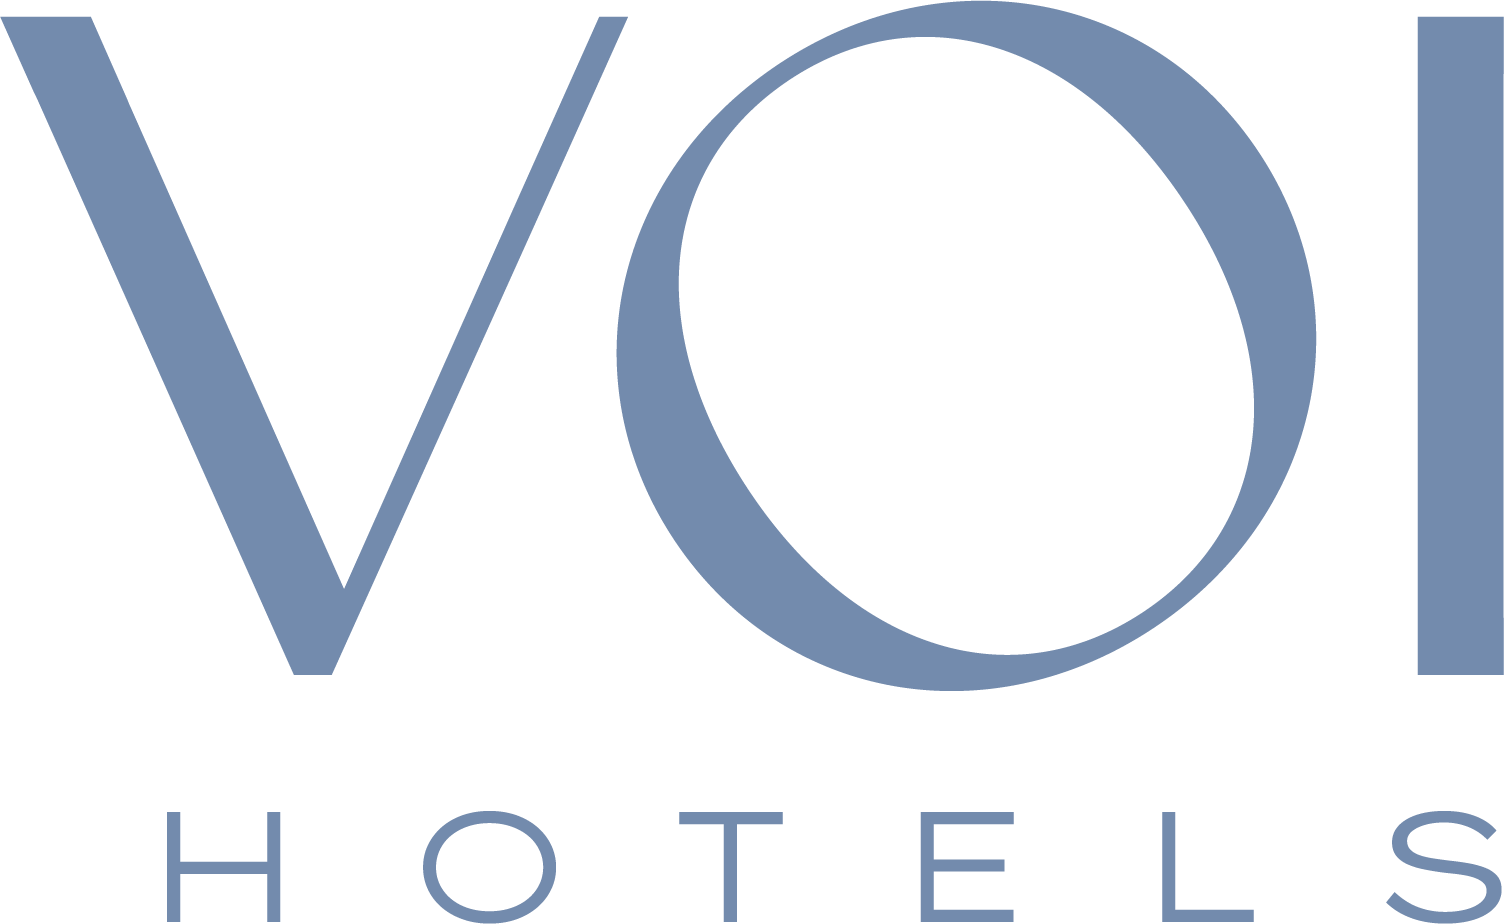 VOI Hotels